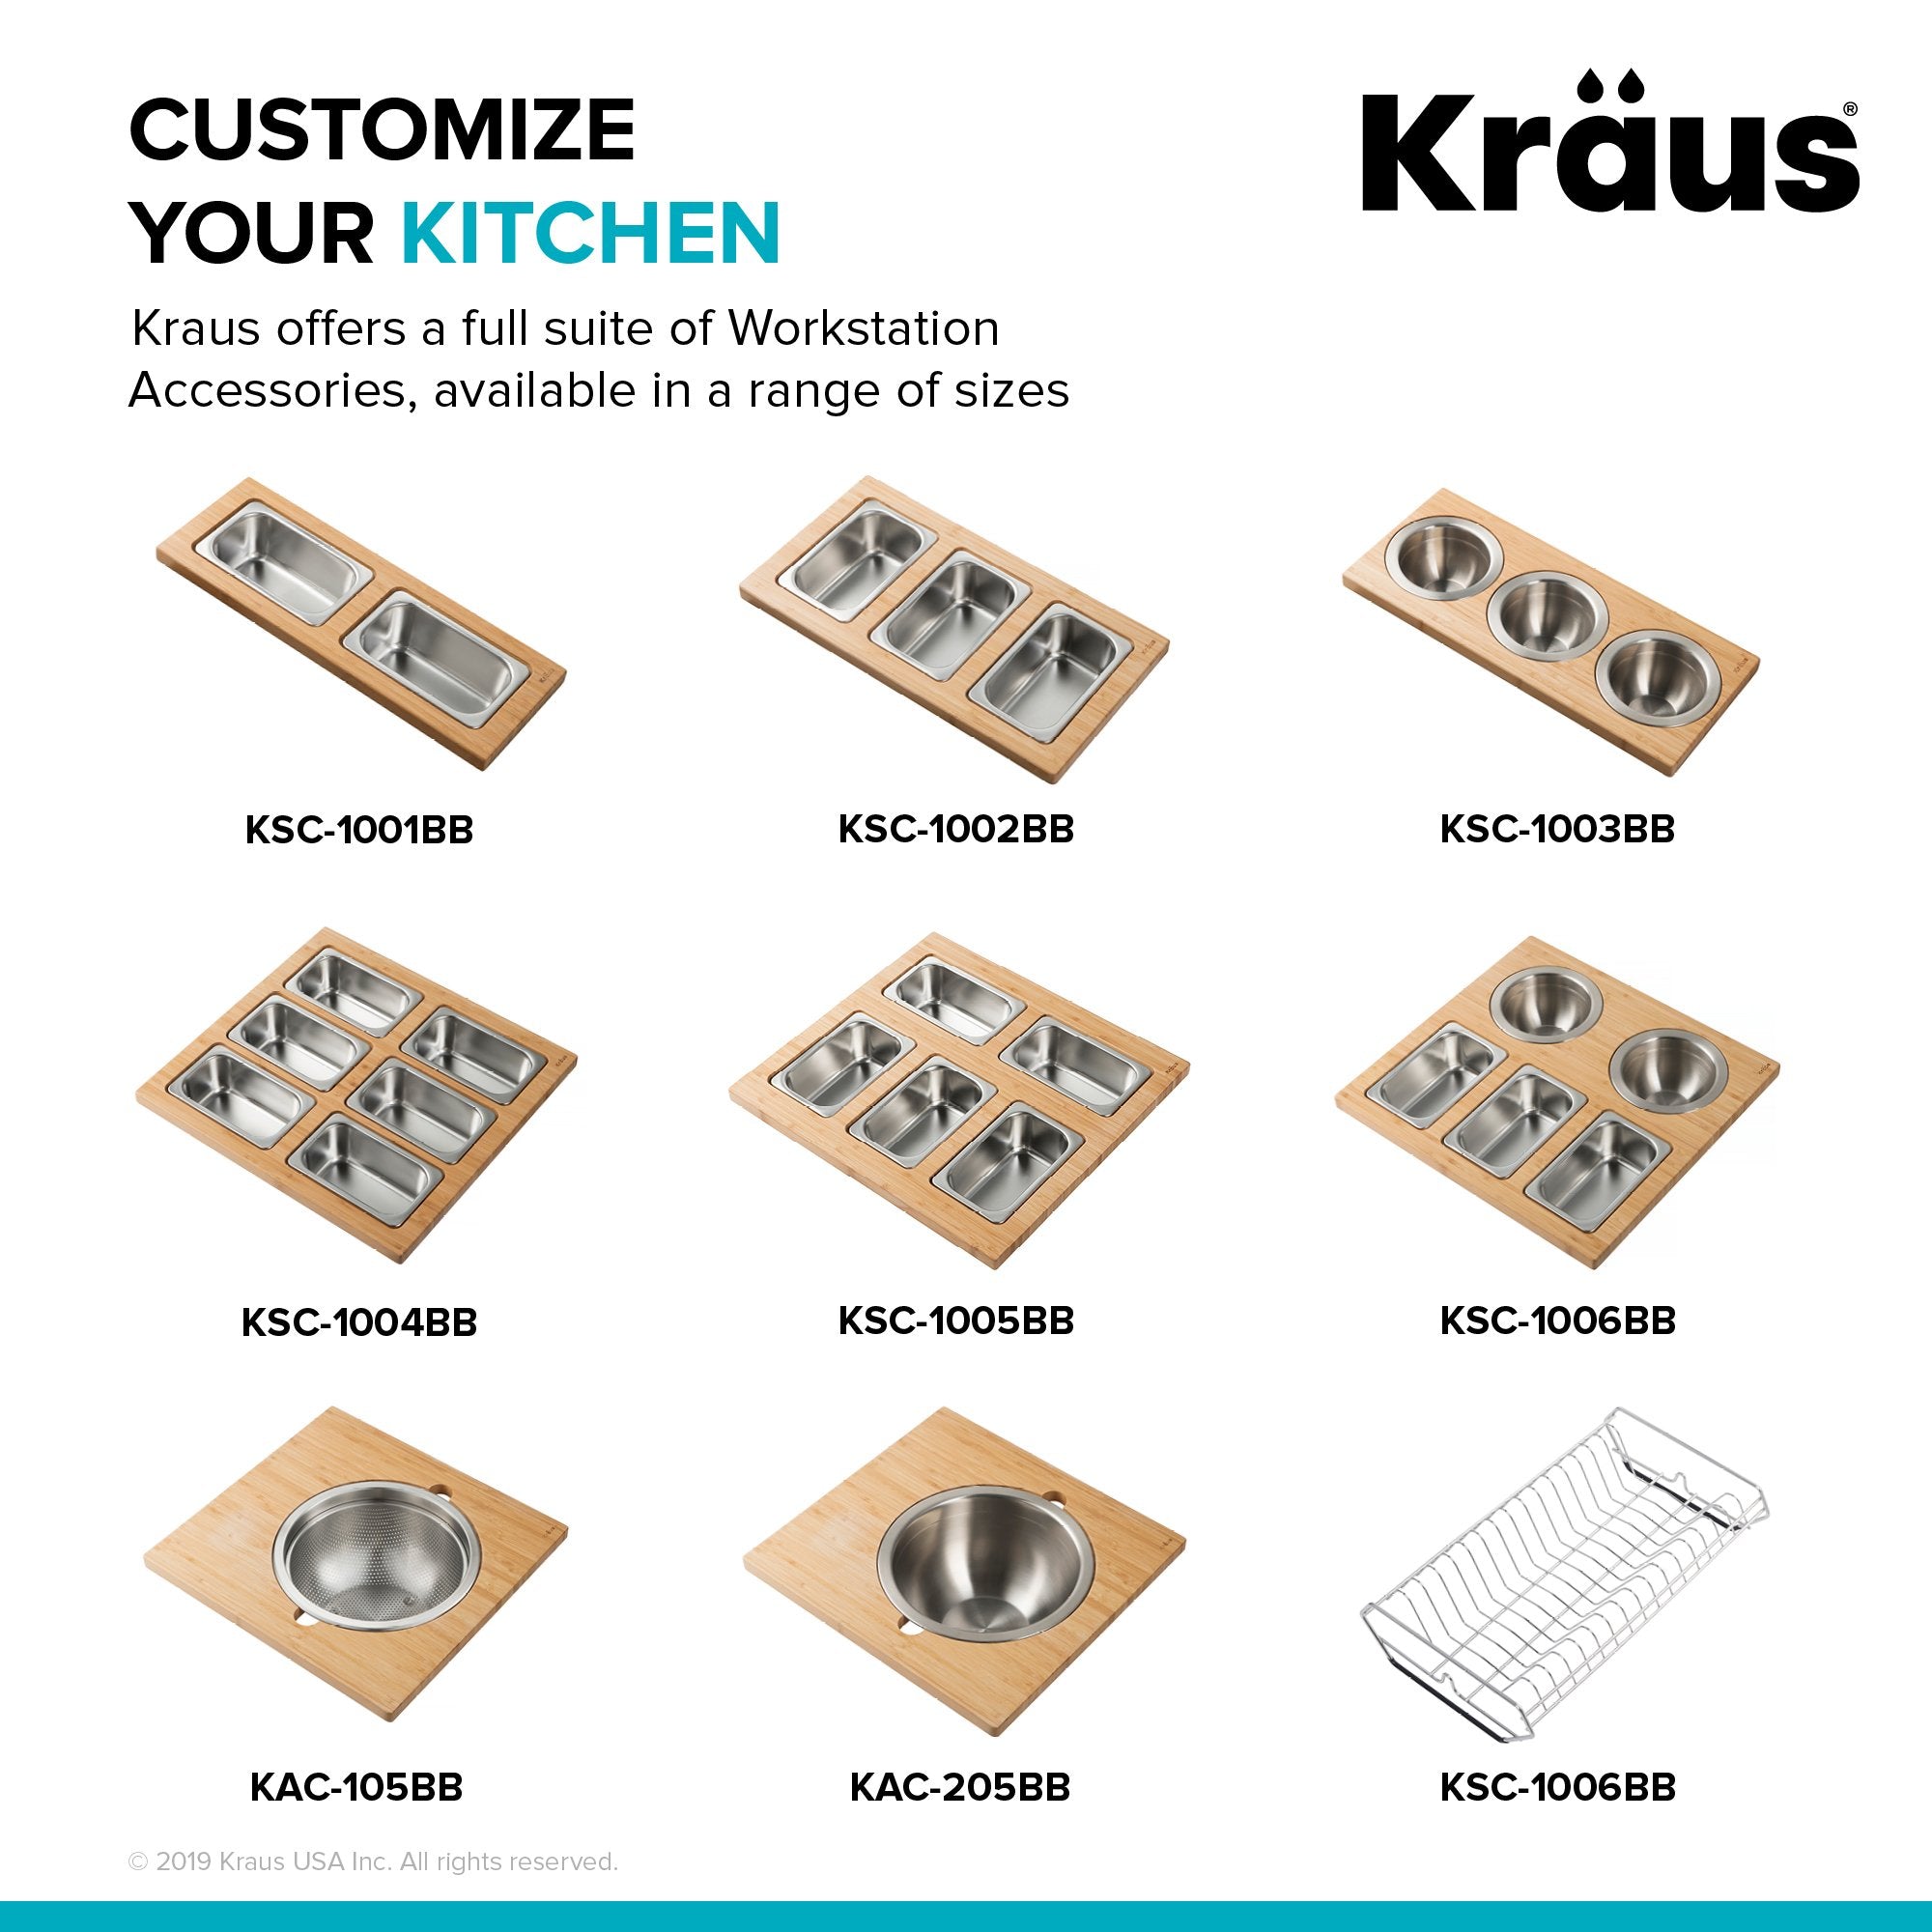 KRAUS Workstation Serving Board Set with Three Stainless Steel Bowls-Kitchen Accessories-KRAUS